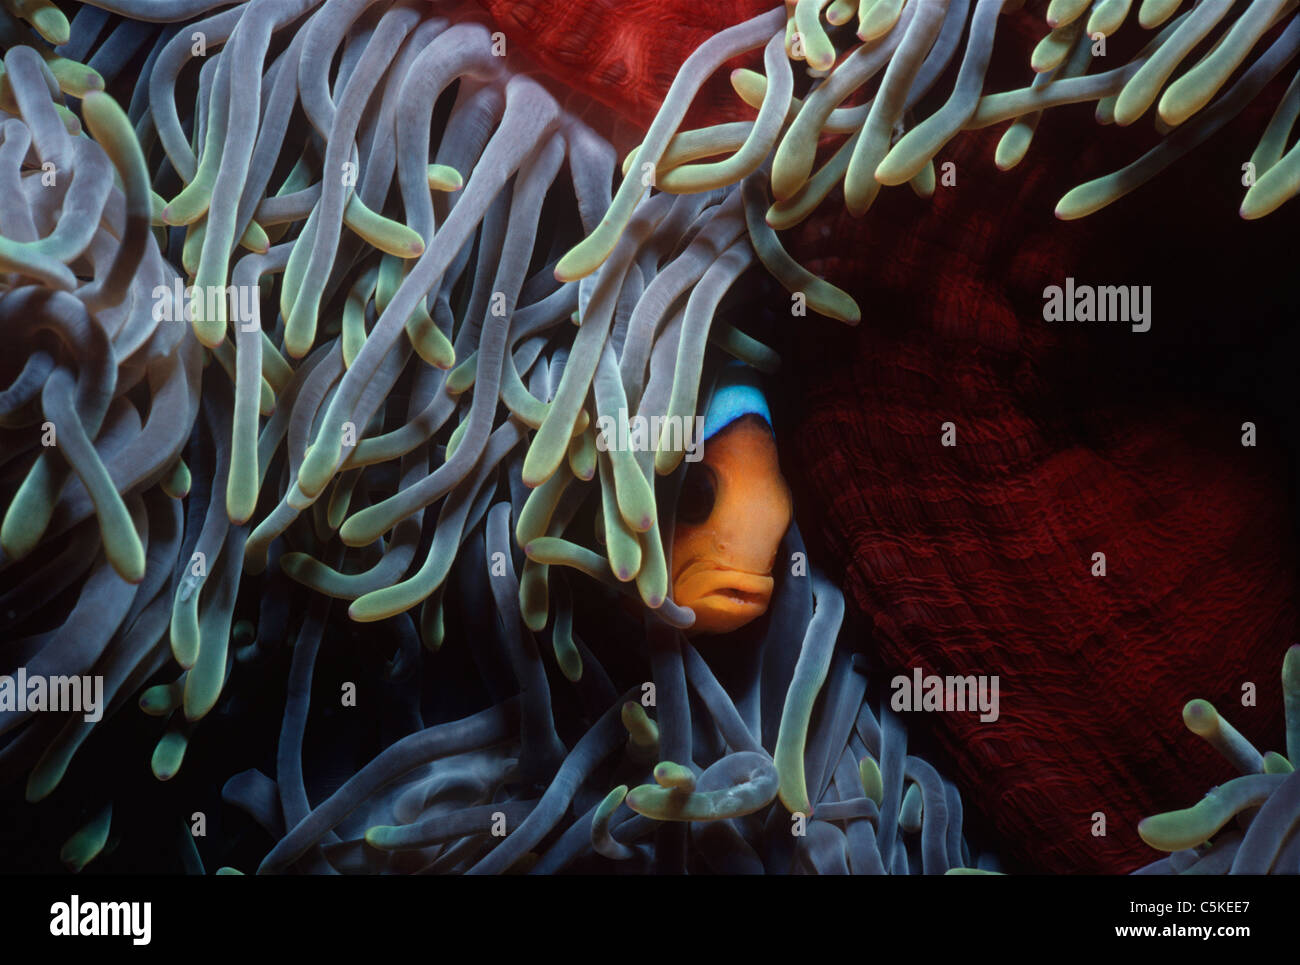 La simbiótica Two-Band pez payaso (Amphiprion bicinctus), oculta en la protección de una anémona de mar los tentáculos. Egipto, el Mar Rojo. Foto de stock